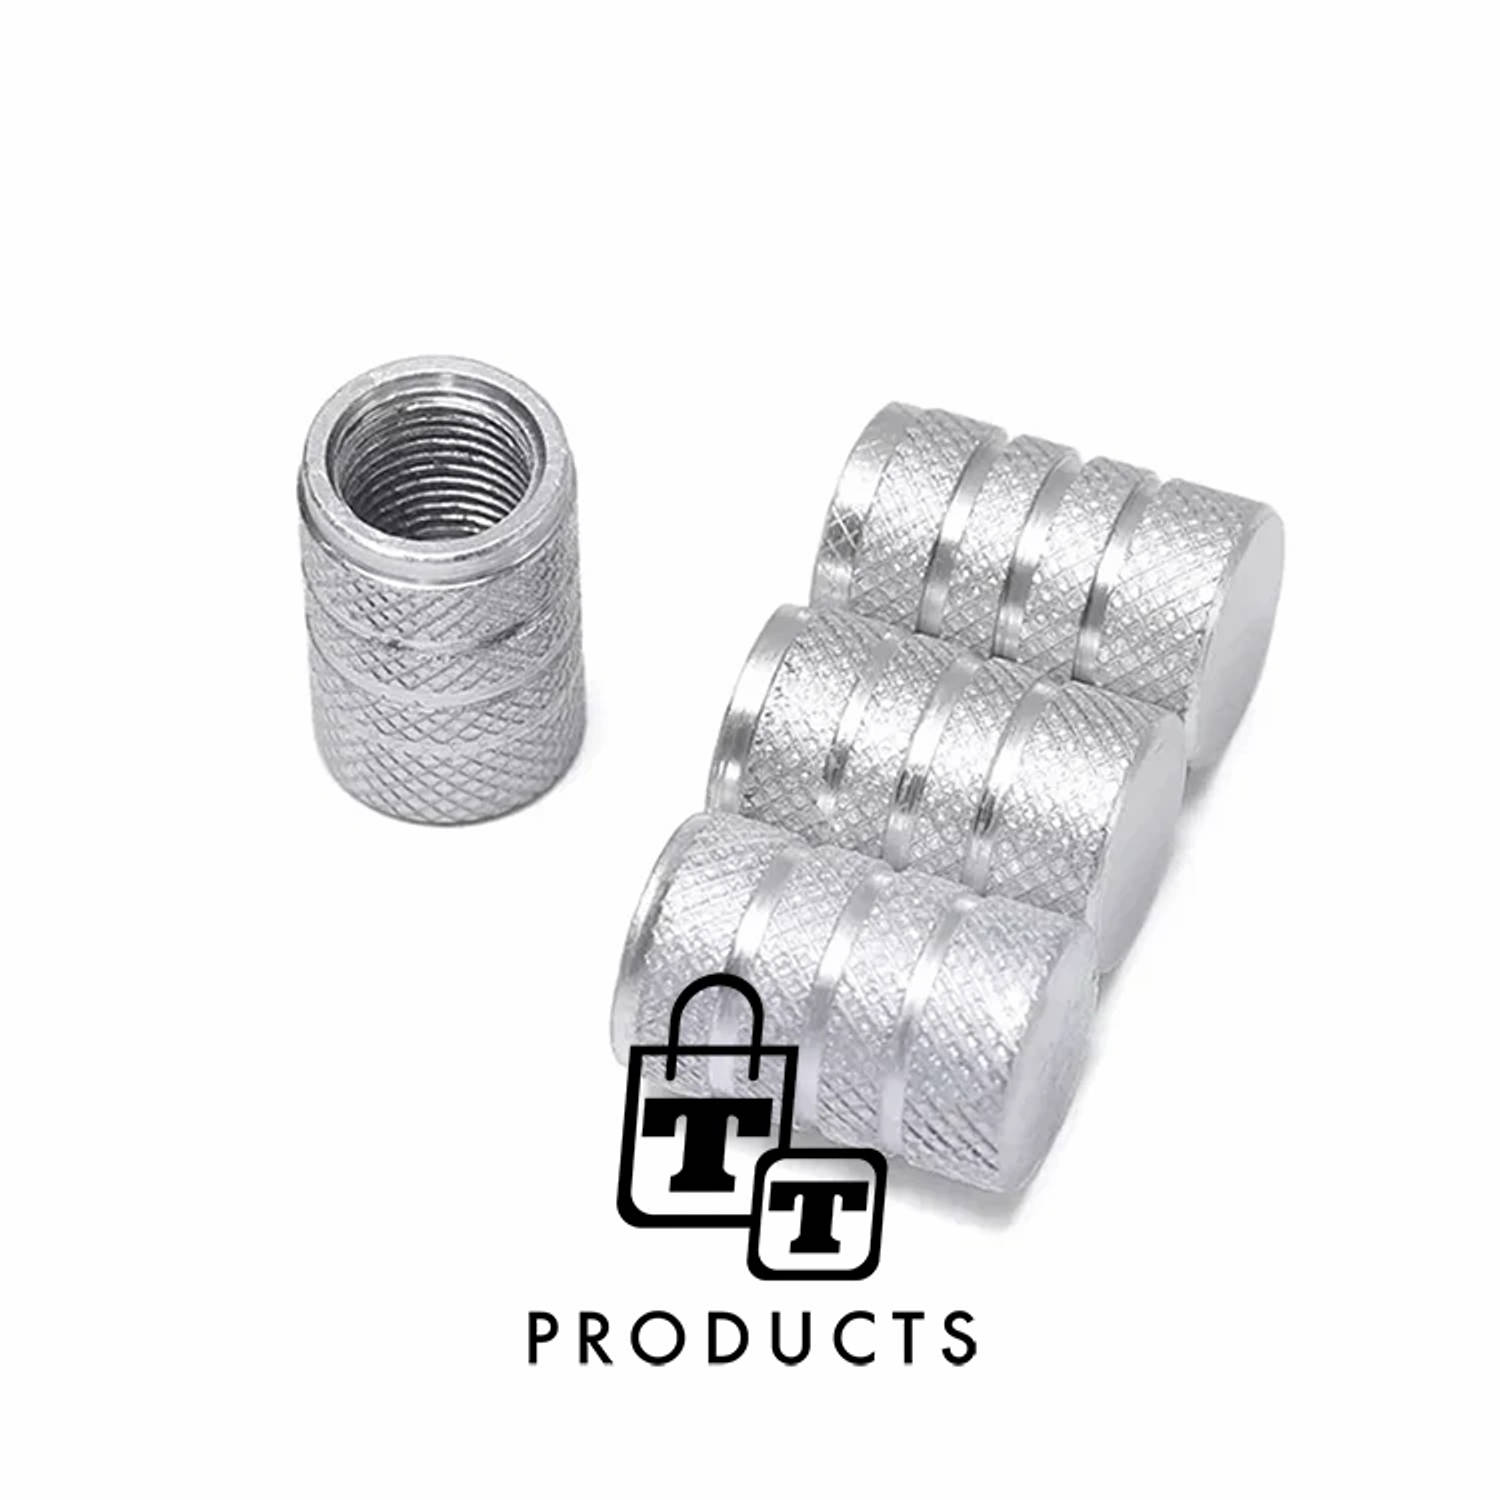 TT-products ventieldoppen 3-rings Silver aluminium 4 stuks zilver auto ventieldop ventieldopjes